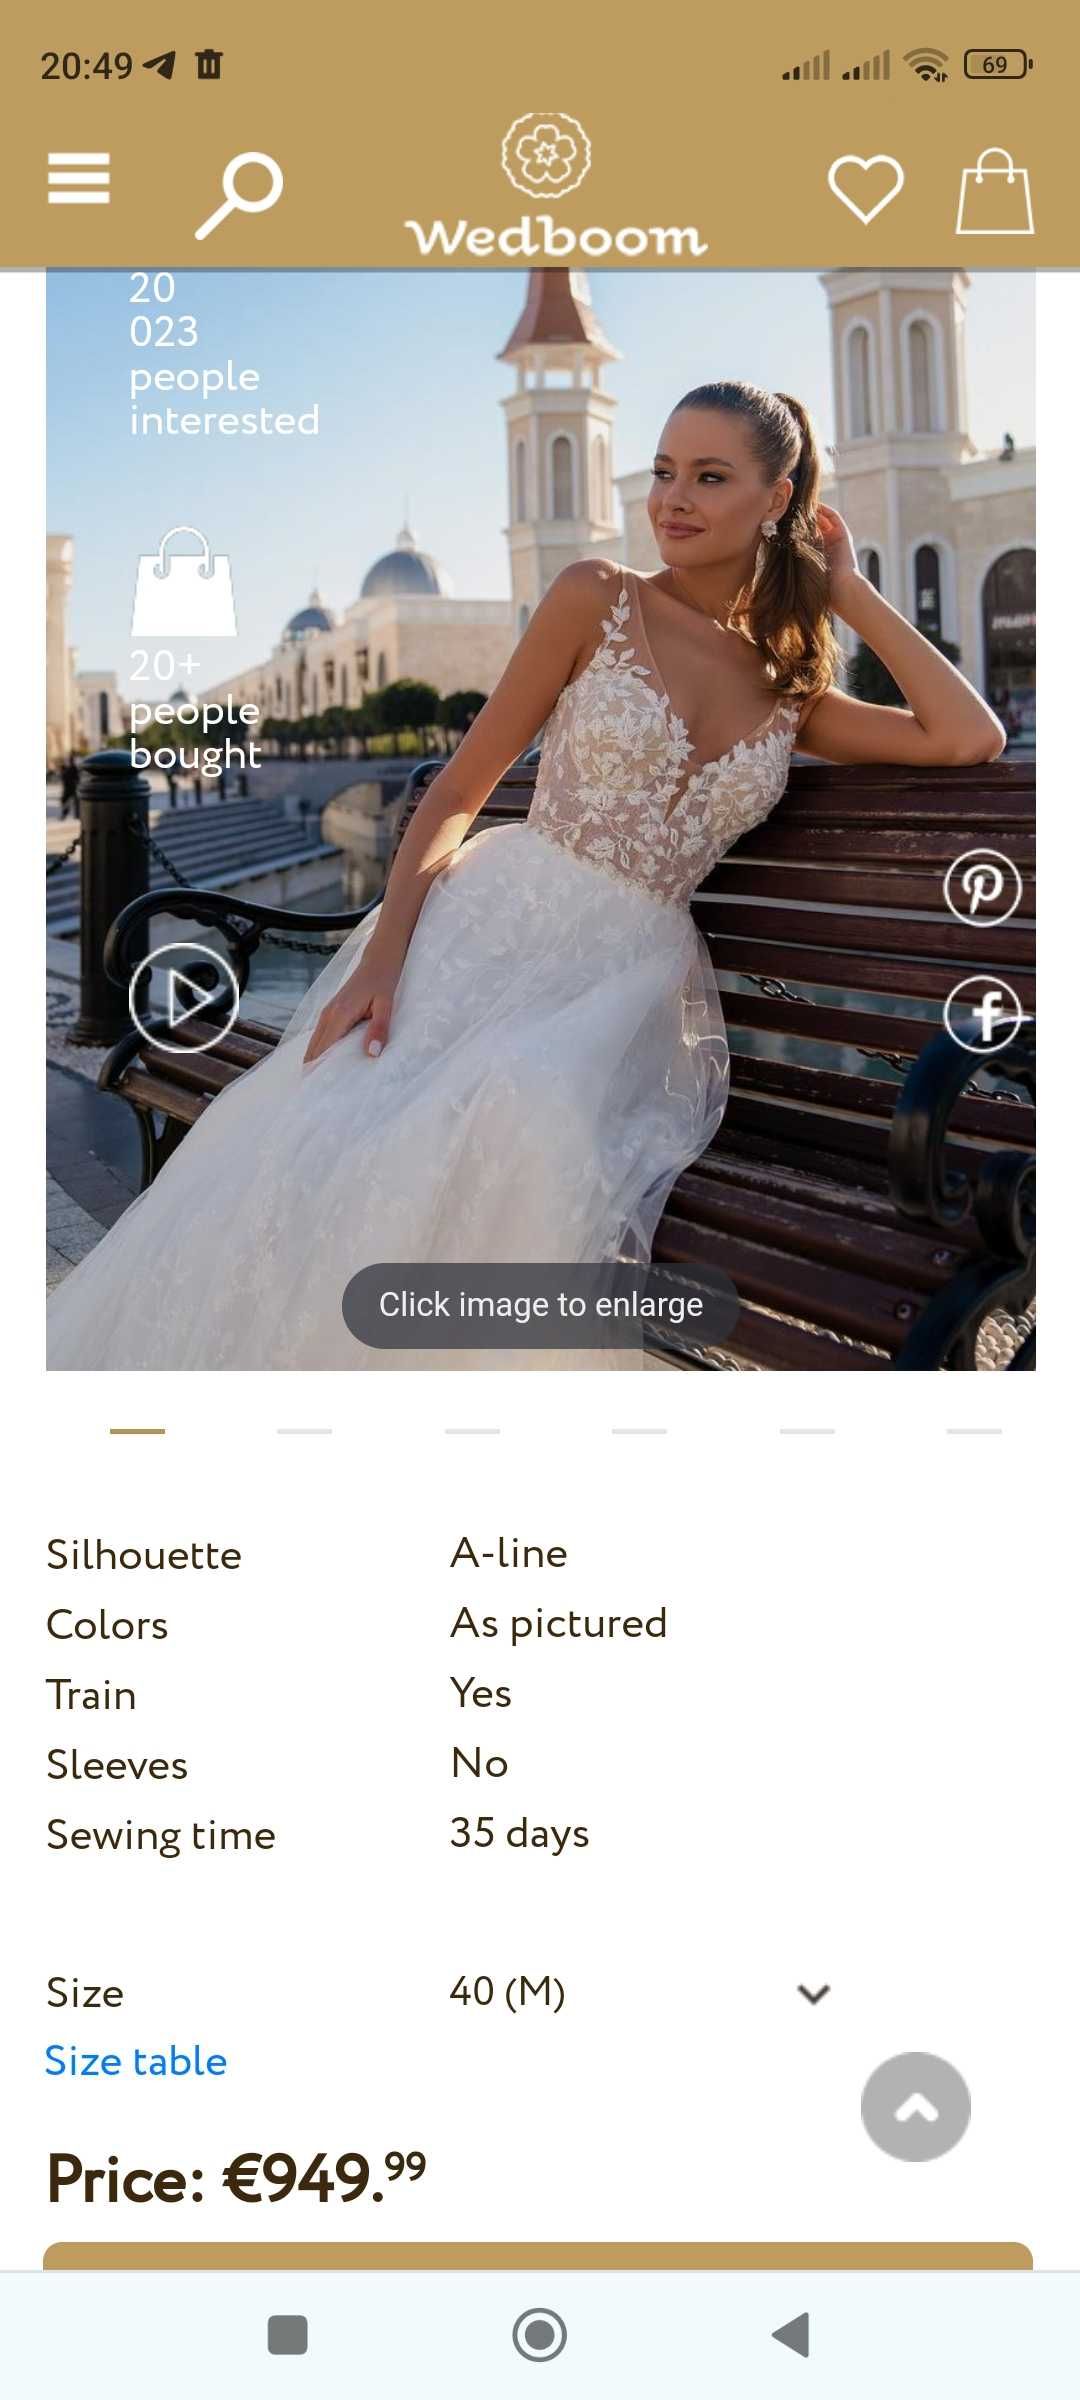 Весільне плаття Silviamo S-543-Cassia